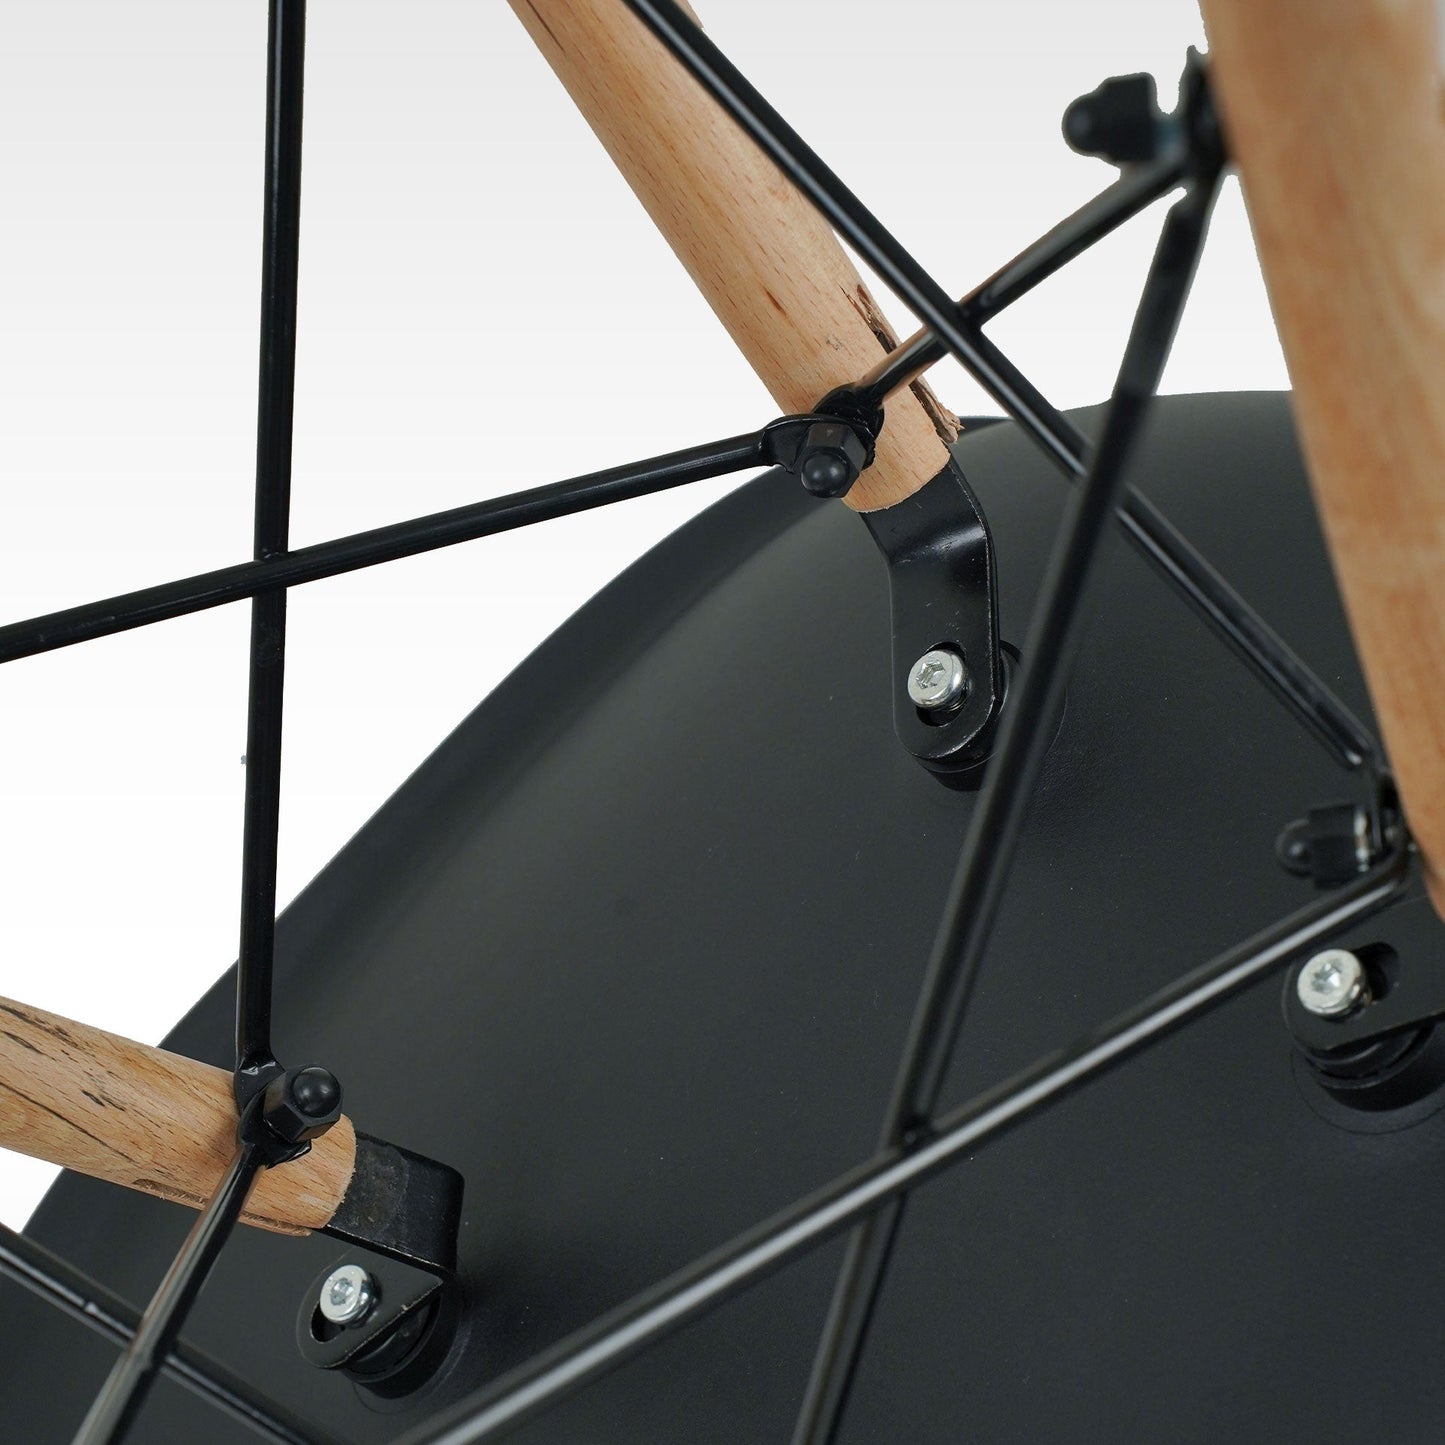 Silla Mirel Shell Minimalista para Comedor e interiores el Hogar - Diseño moderno y ergonómico Set 2